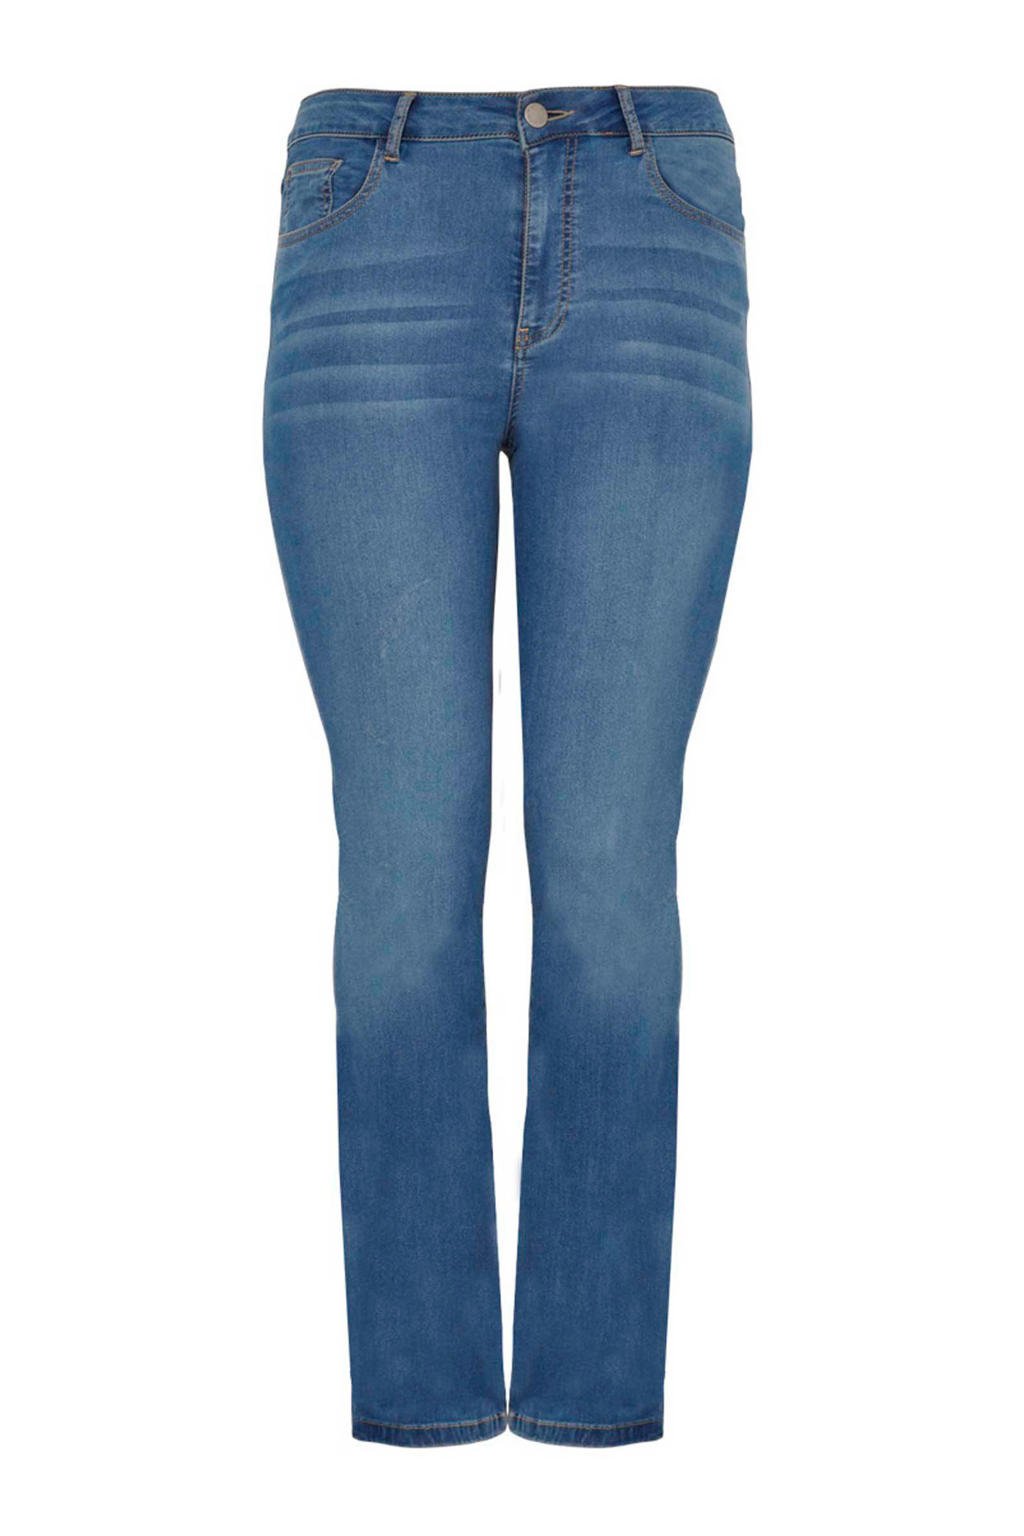 Yoek high waist straight fit jeans lichtblauw